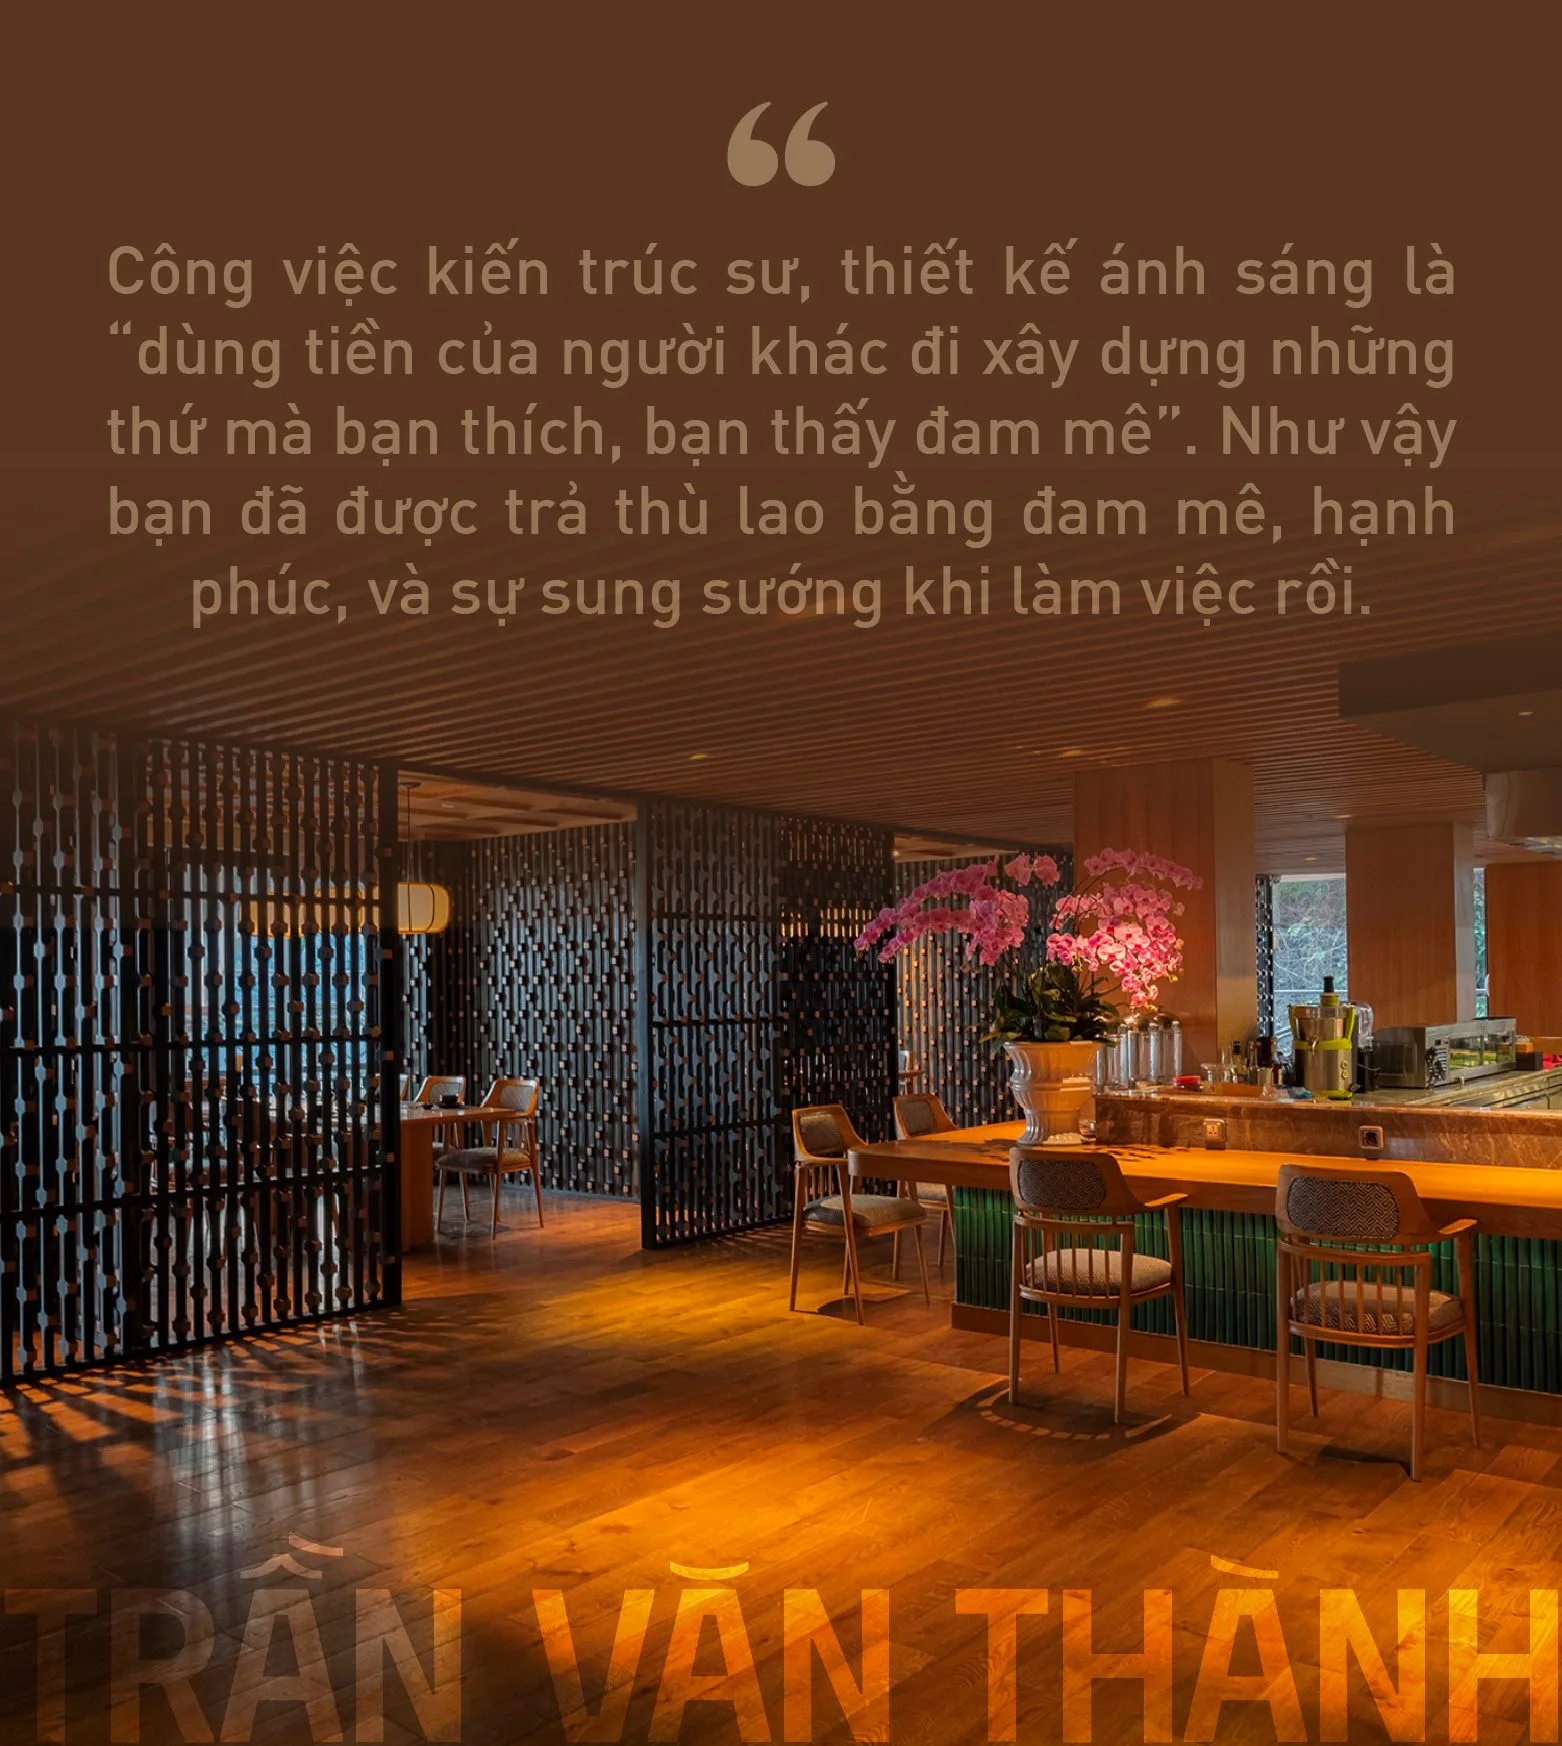 Cố vấn chiếu sáng cho các “ông lớn khách sạn” Trần Văn Thành: Thiết kế ánh sáng là “trang điểm” công trình mà thù lao được trả bằng một thứ không phải tiền bạc - Ảnh 9.